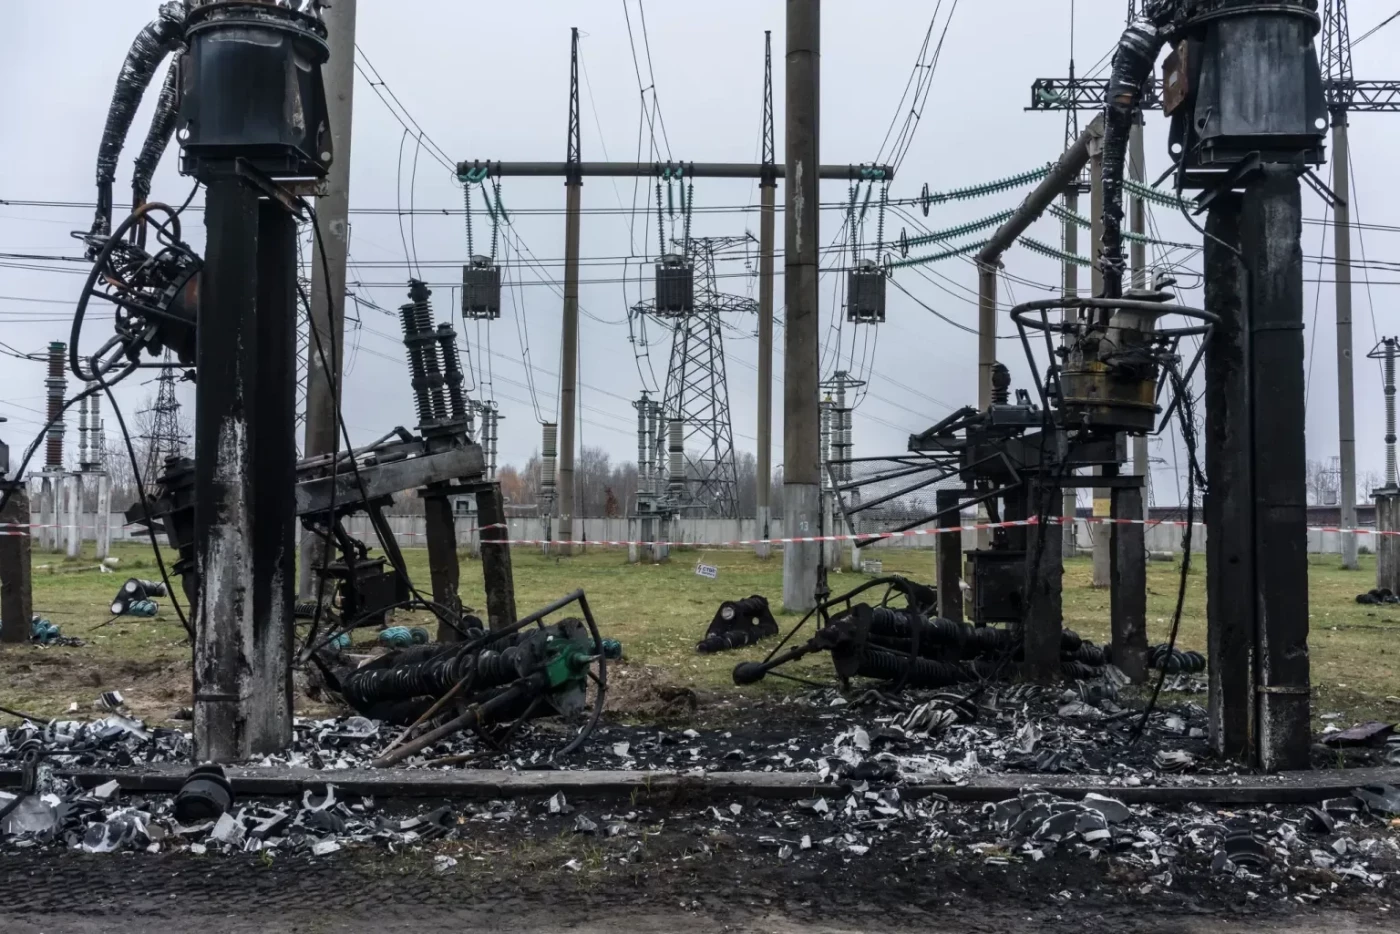 Майже половина енергомережі України виведена з ладу через російські удари, каже прем’єр, фото-1